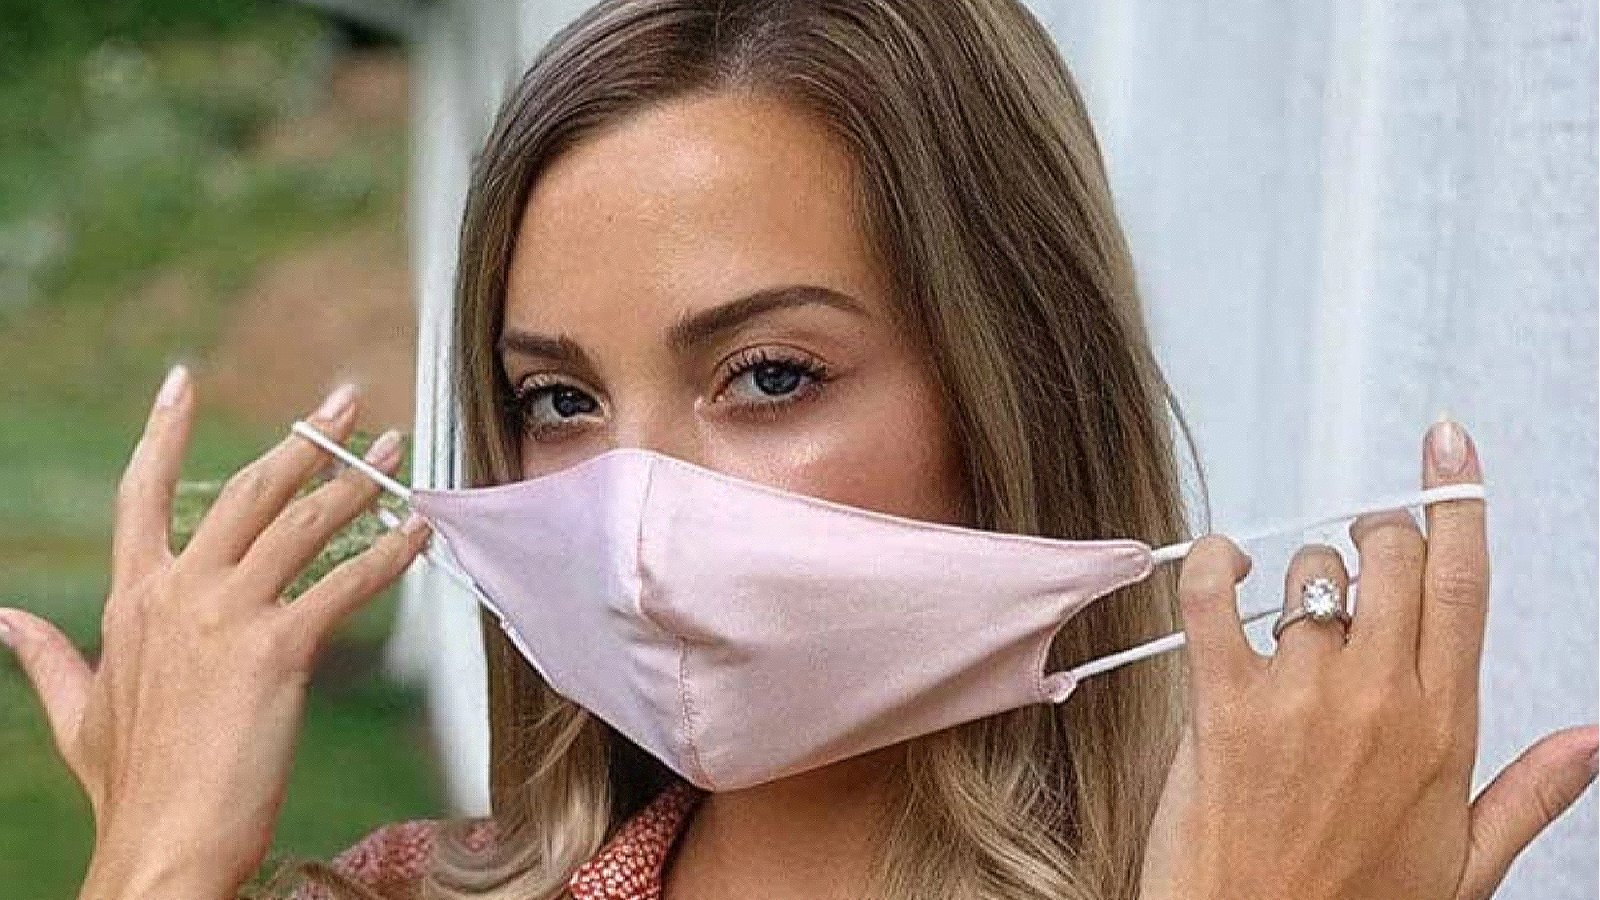 Mulberry Silk Reusable Sensitive Face Masks for Women